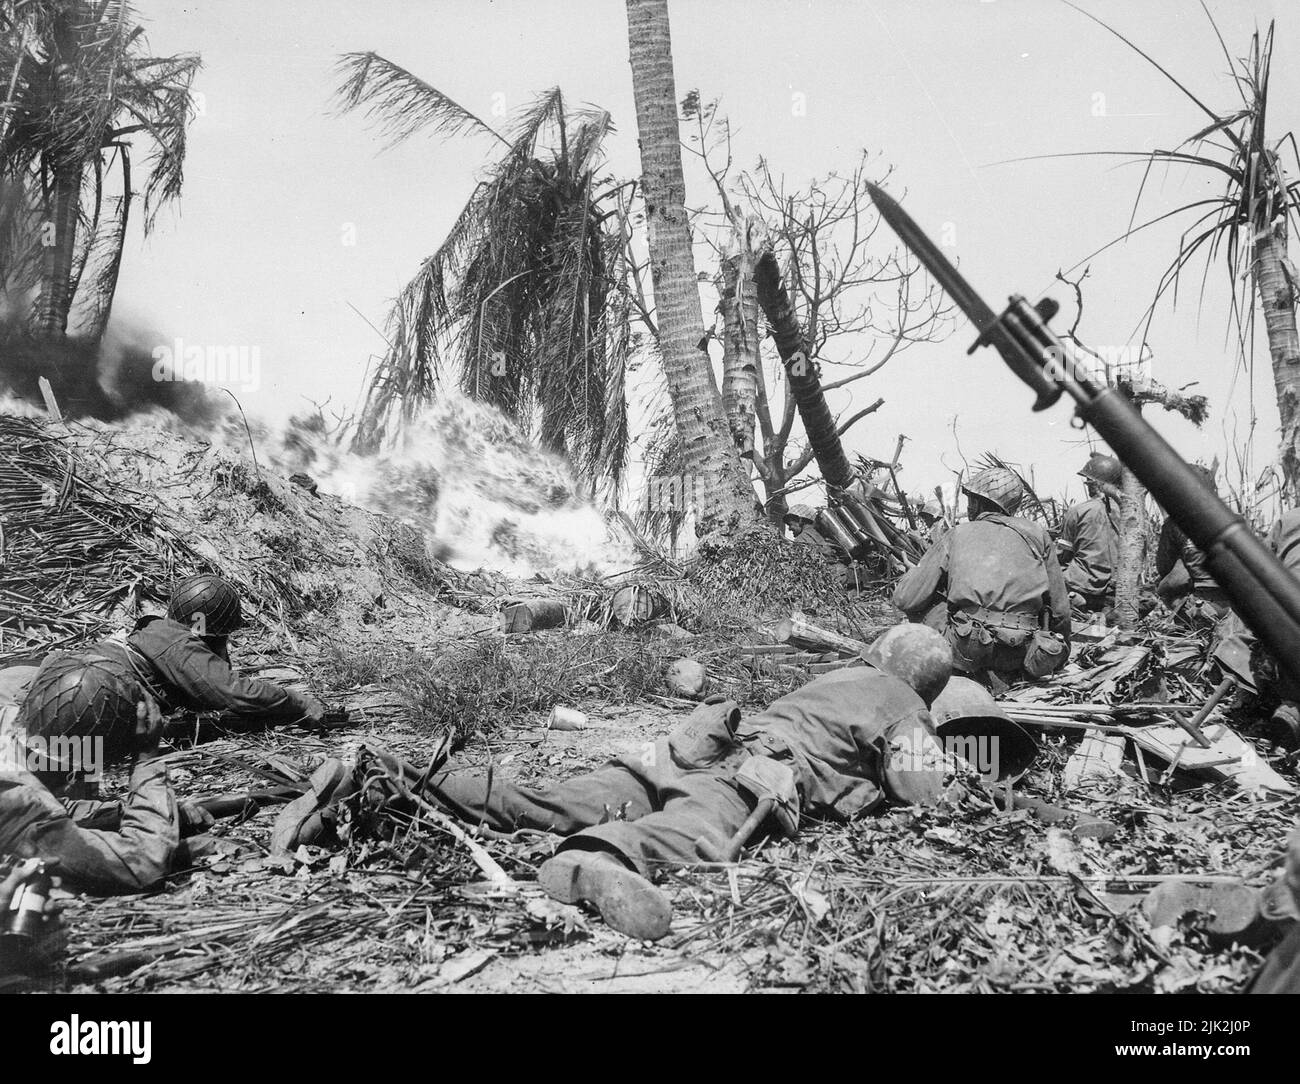 Männer der 7. Division benutzen Flammenwerfer auf japanische Soldaten in einem Blockhaus auf der Insel Kwajalein, während andere mit Gewehren warten, falls andere Japaner herauskommen sollten. Stockfoto